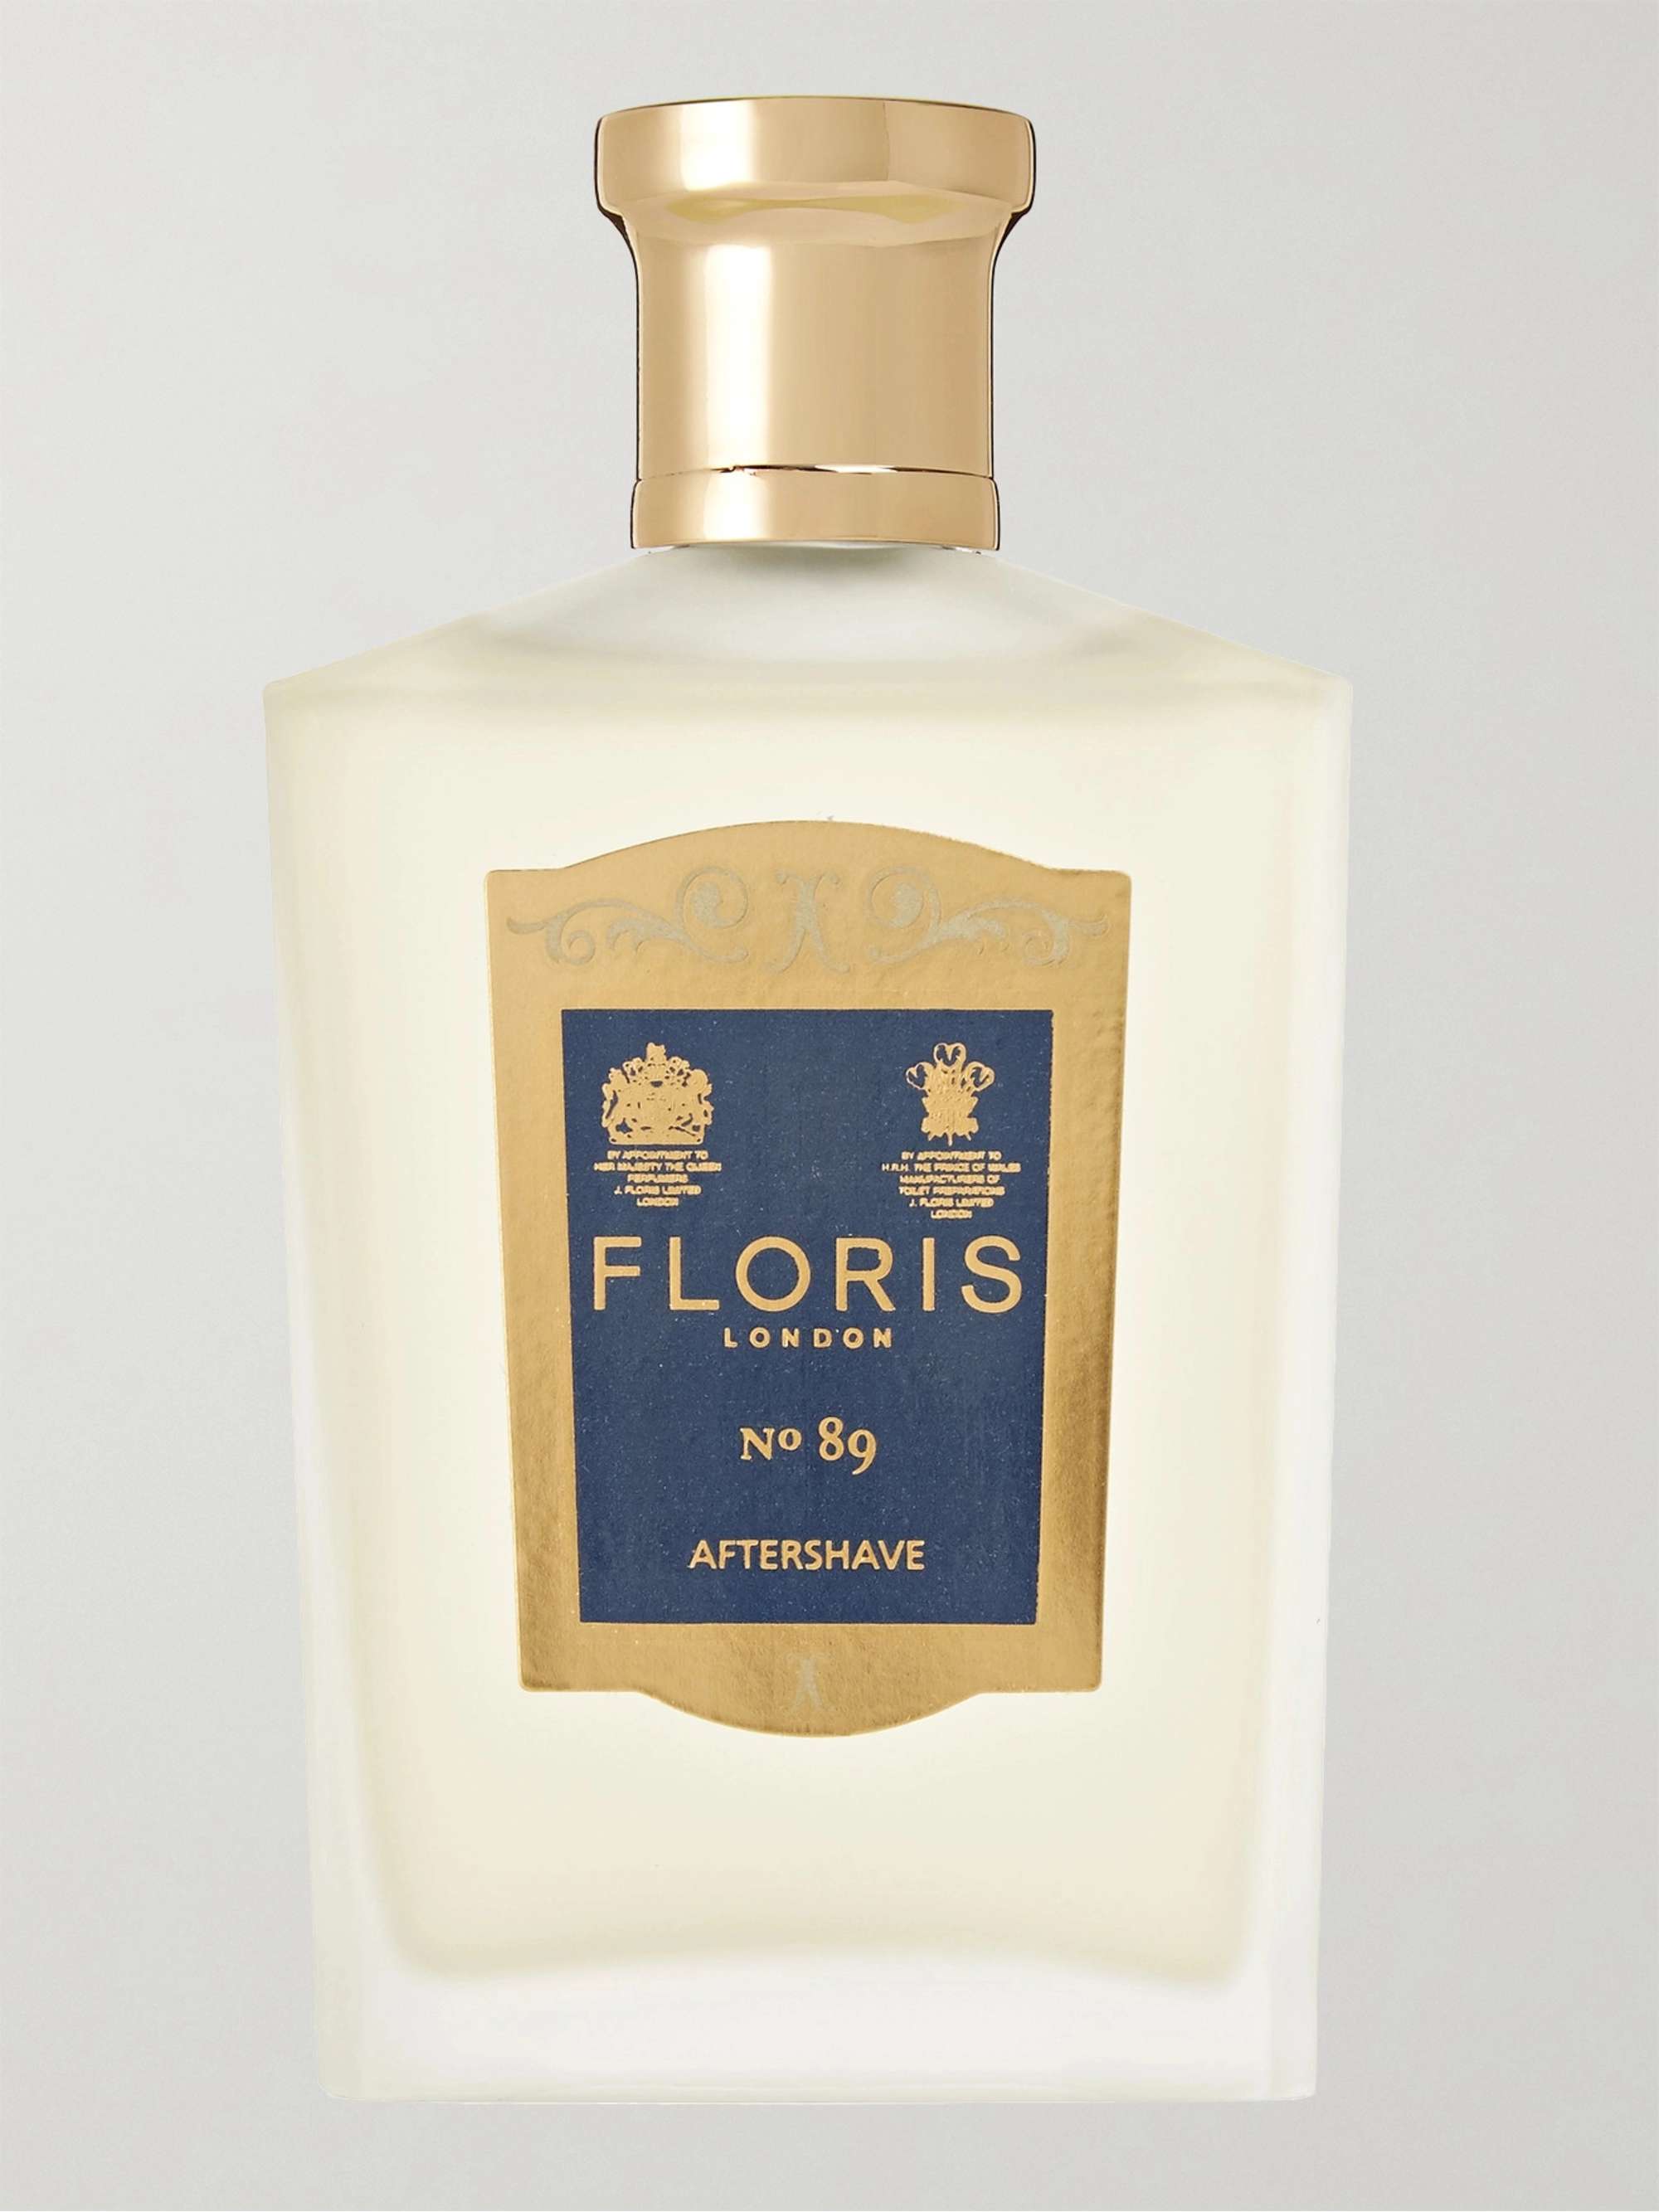 Floris London No. 89 Aftershave, 100ml